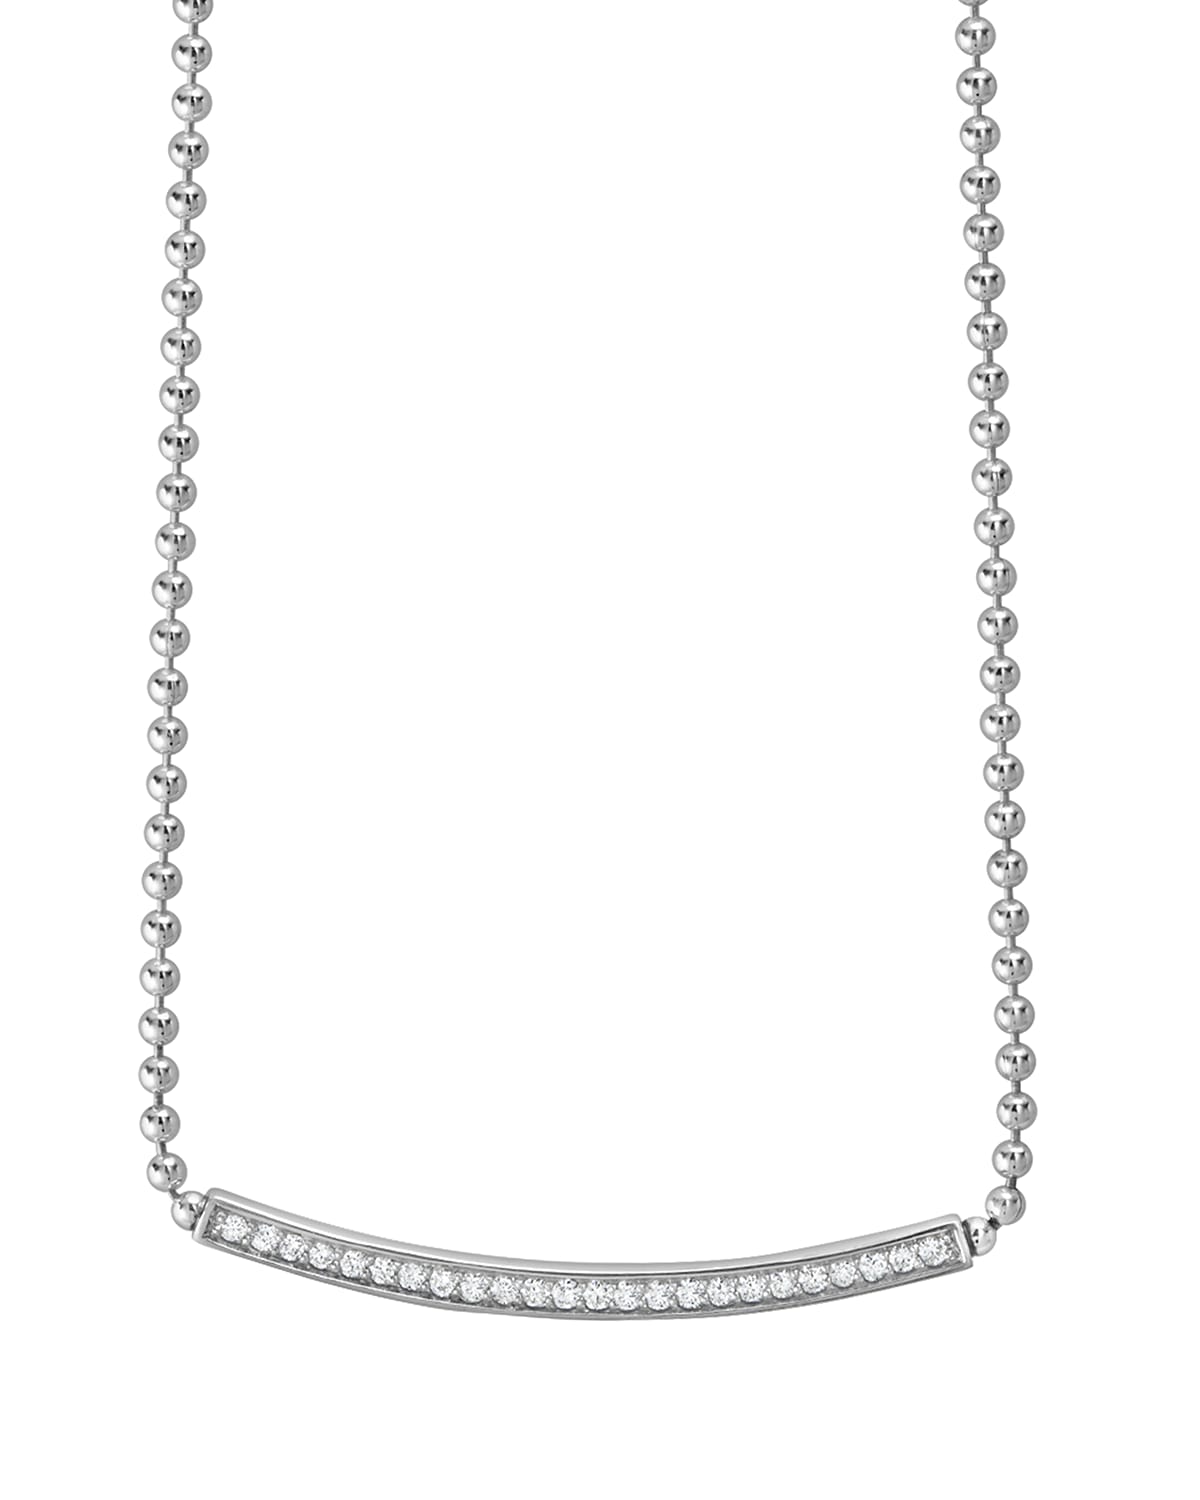 LAGOS Caviar Spark Diamond Ball-Chain Necklace